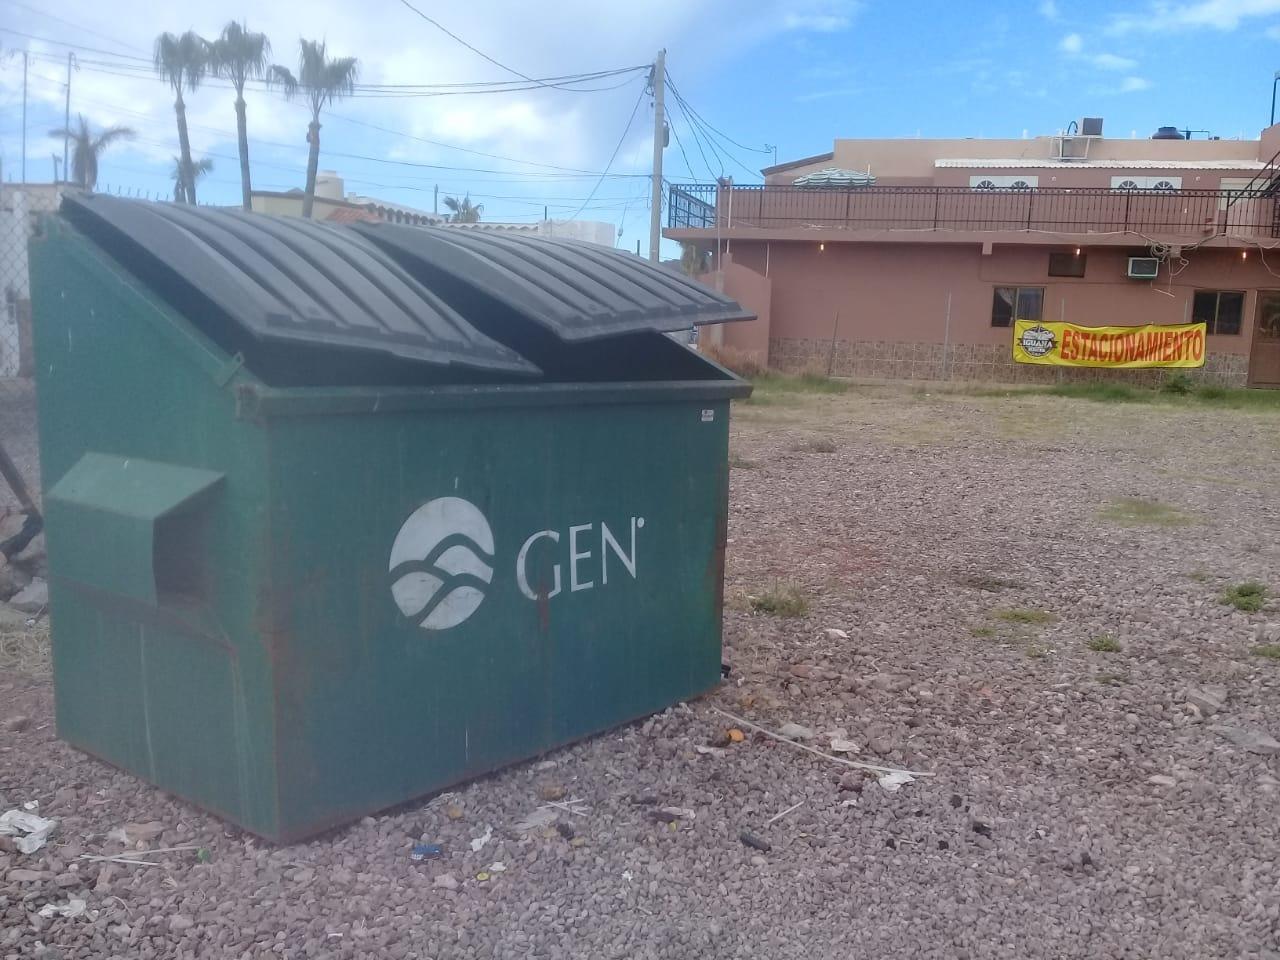 Negocios de Guaymas tienen 30 días para contratar servicio de basura